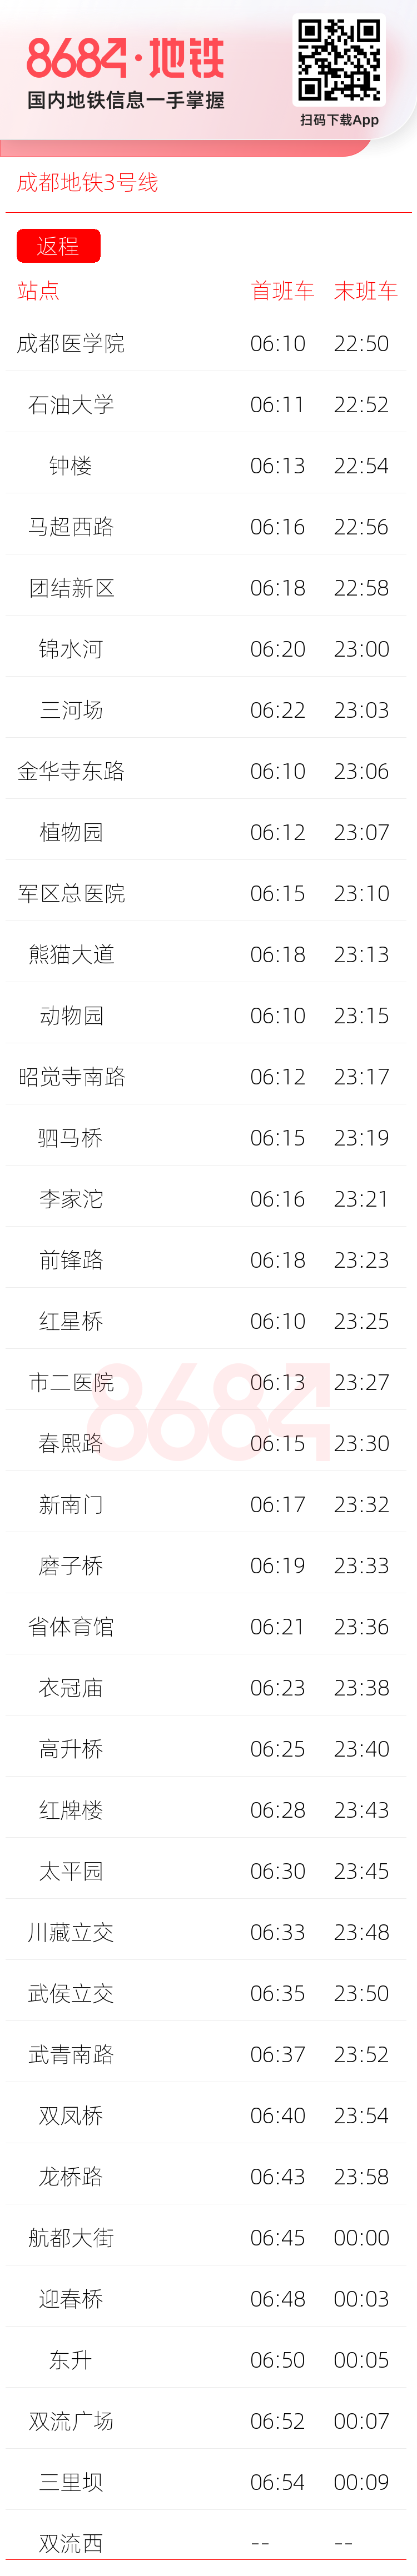 成都地铁3号线运营时间表